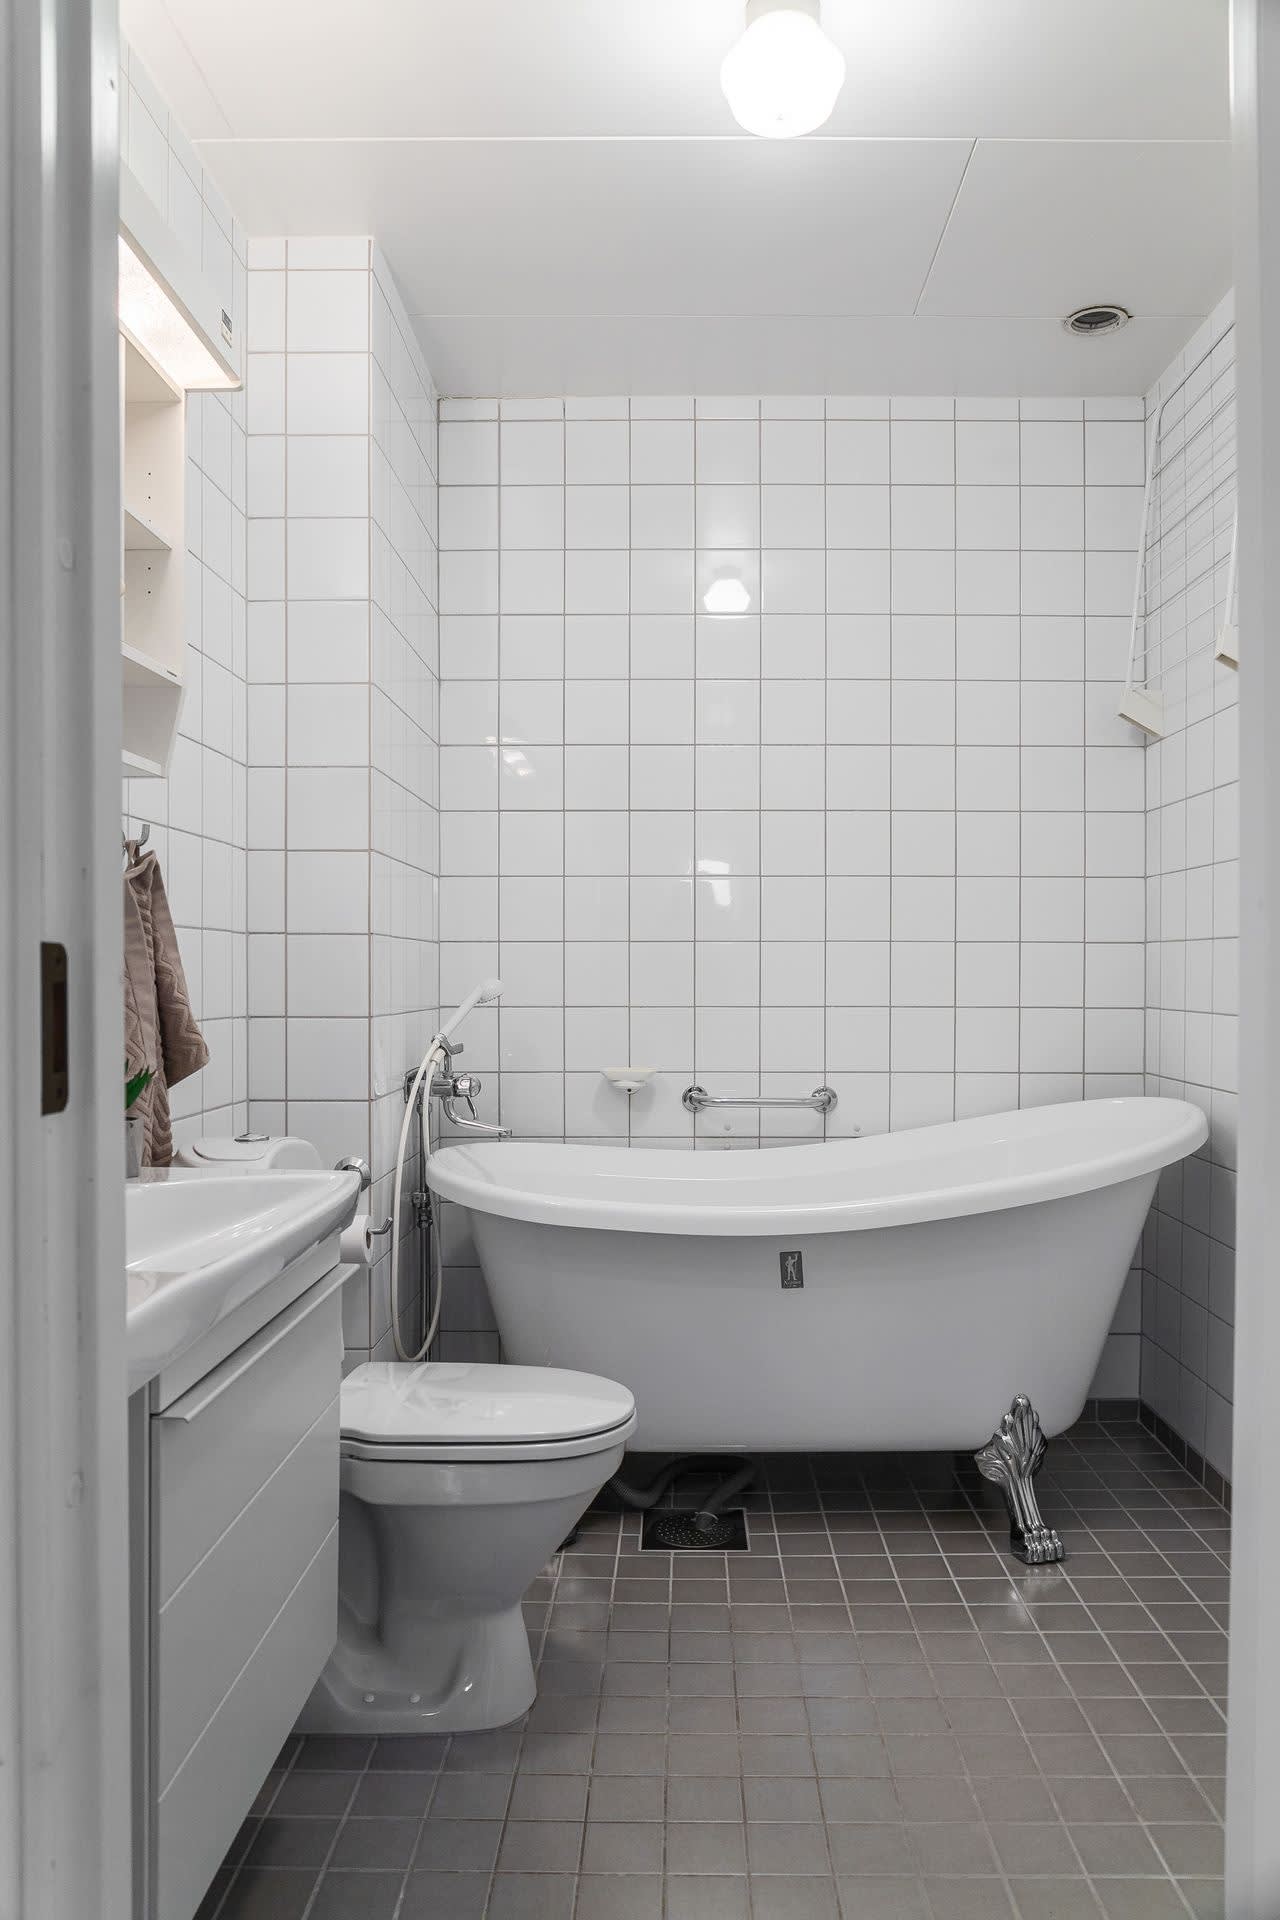 Badrummet på ovanvåningen är nyare och helkaklat med badkar på ?silvertassar?